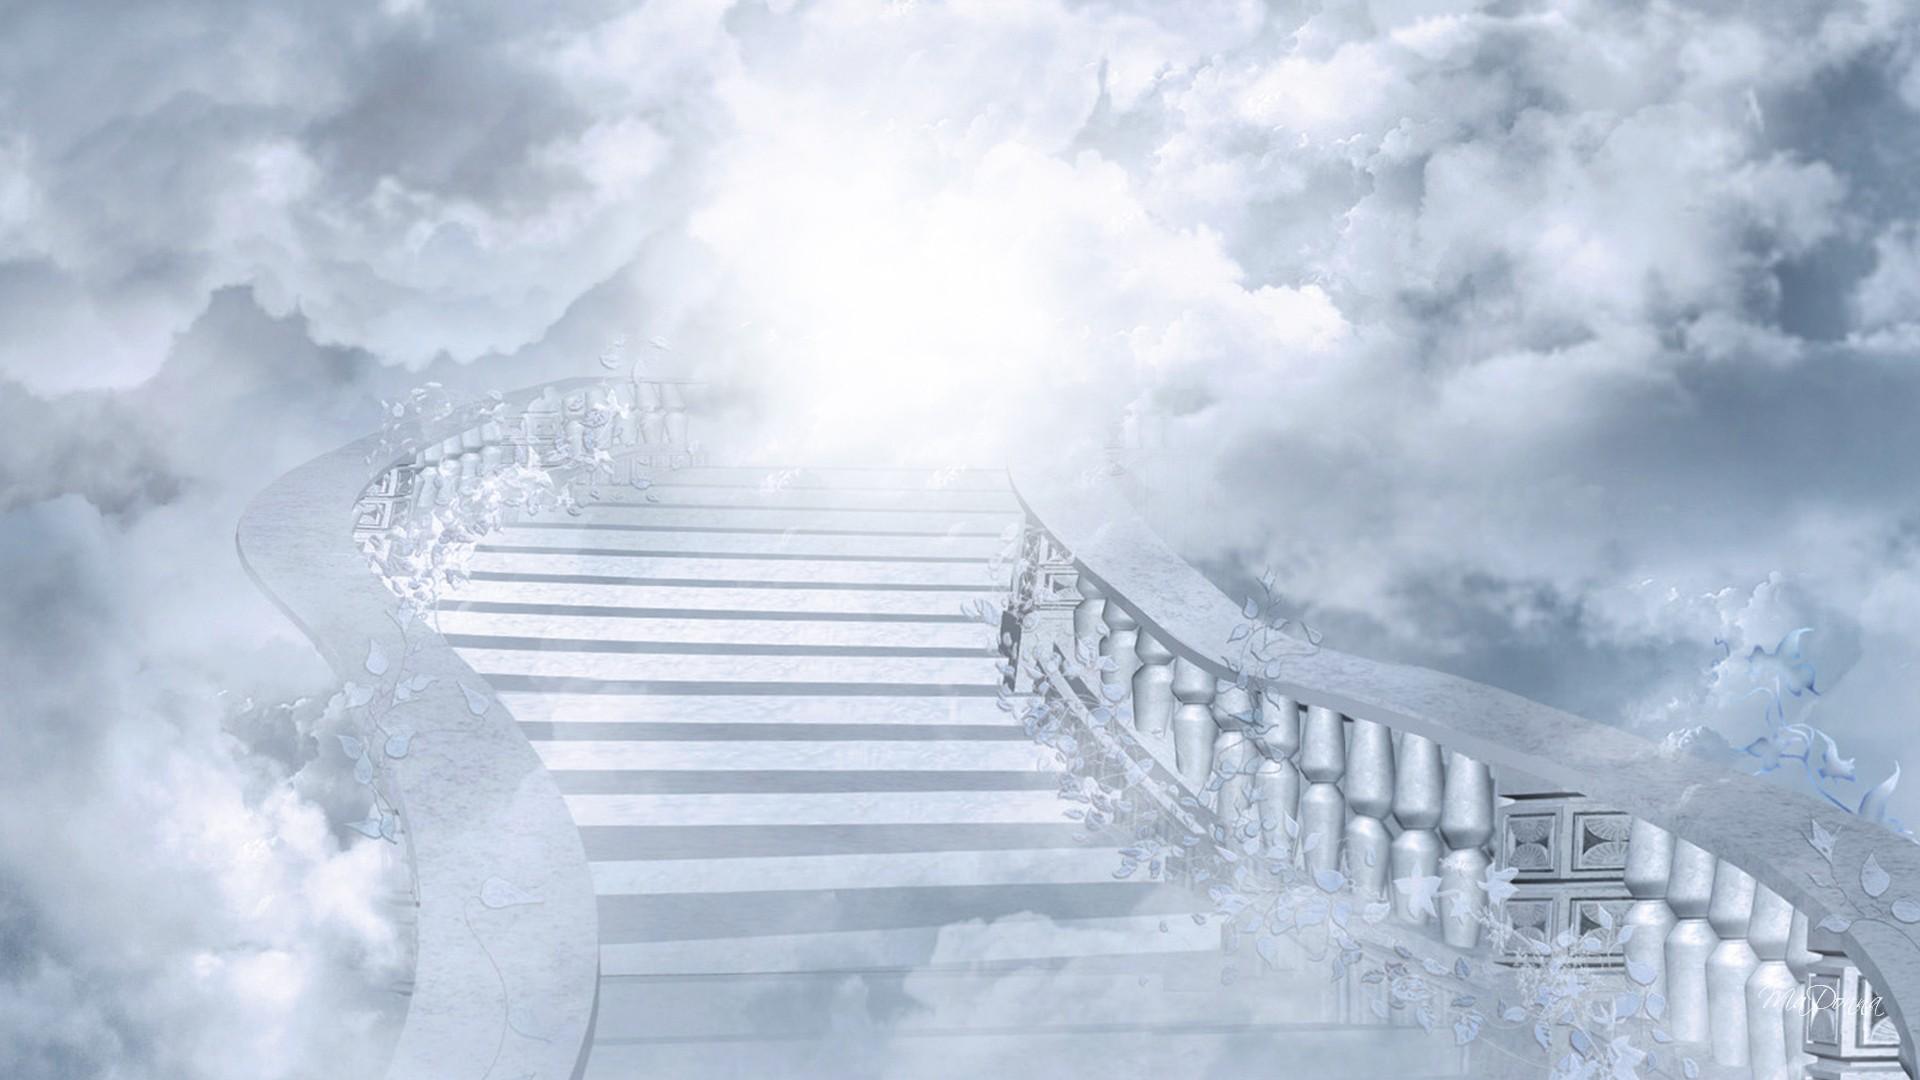 Stairway to Heaven Background. Heaven Wallpaper, Angels Heaven Wallpaper and Heaven Is for Real Wallpaper